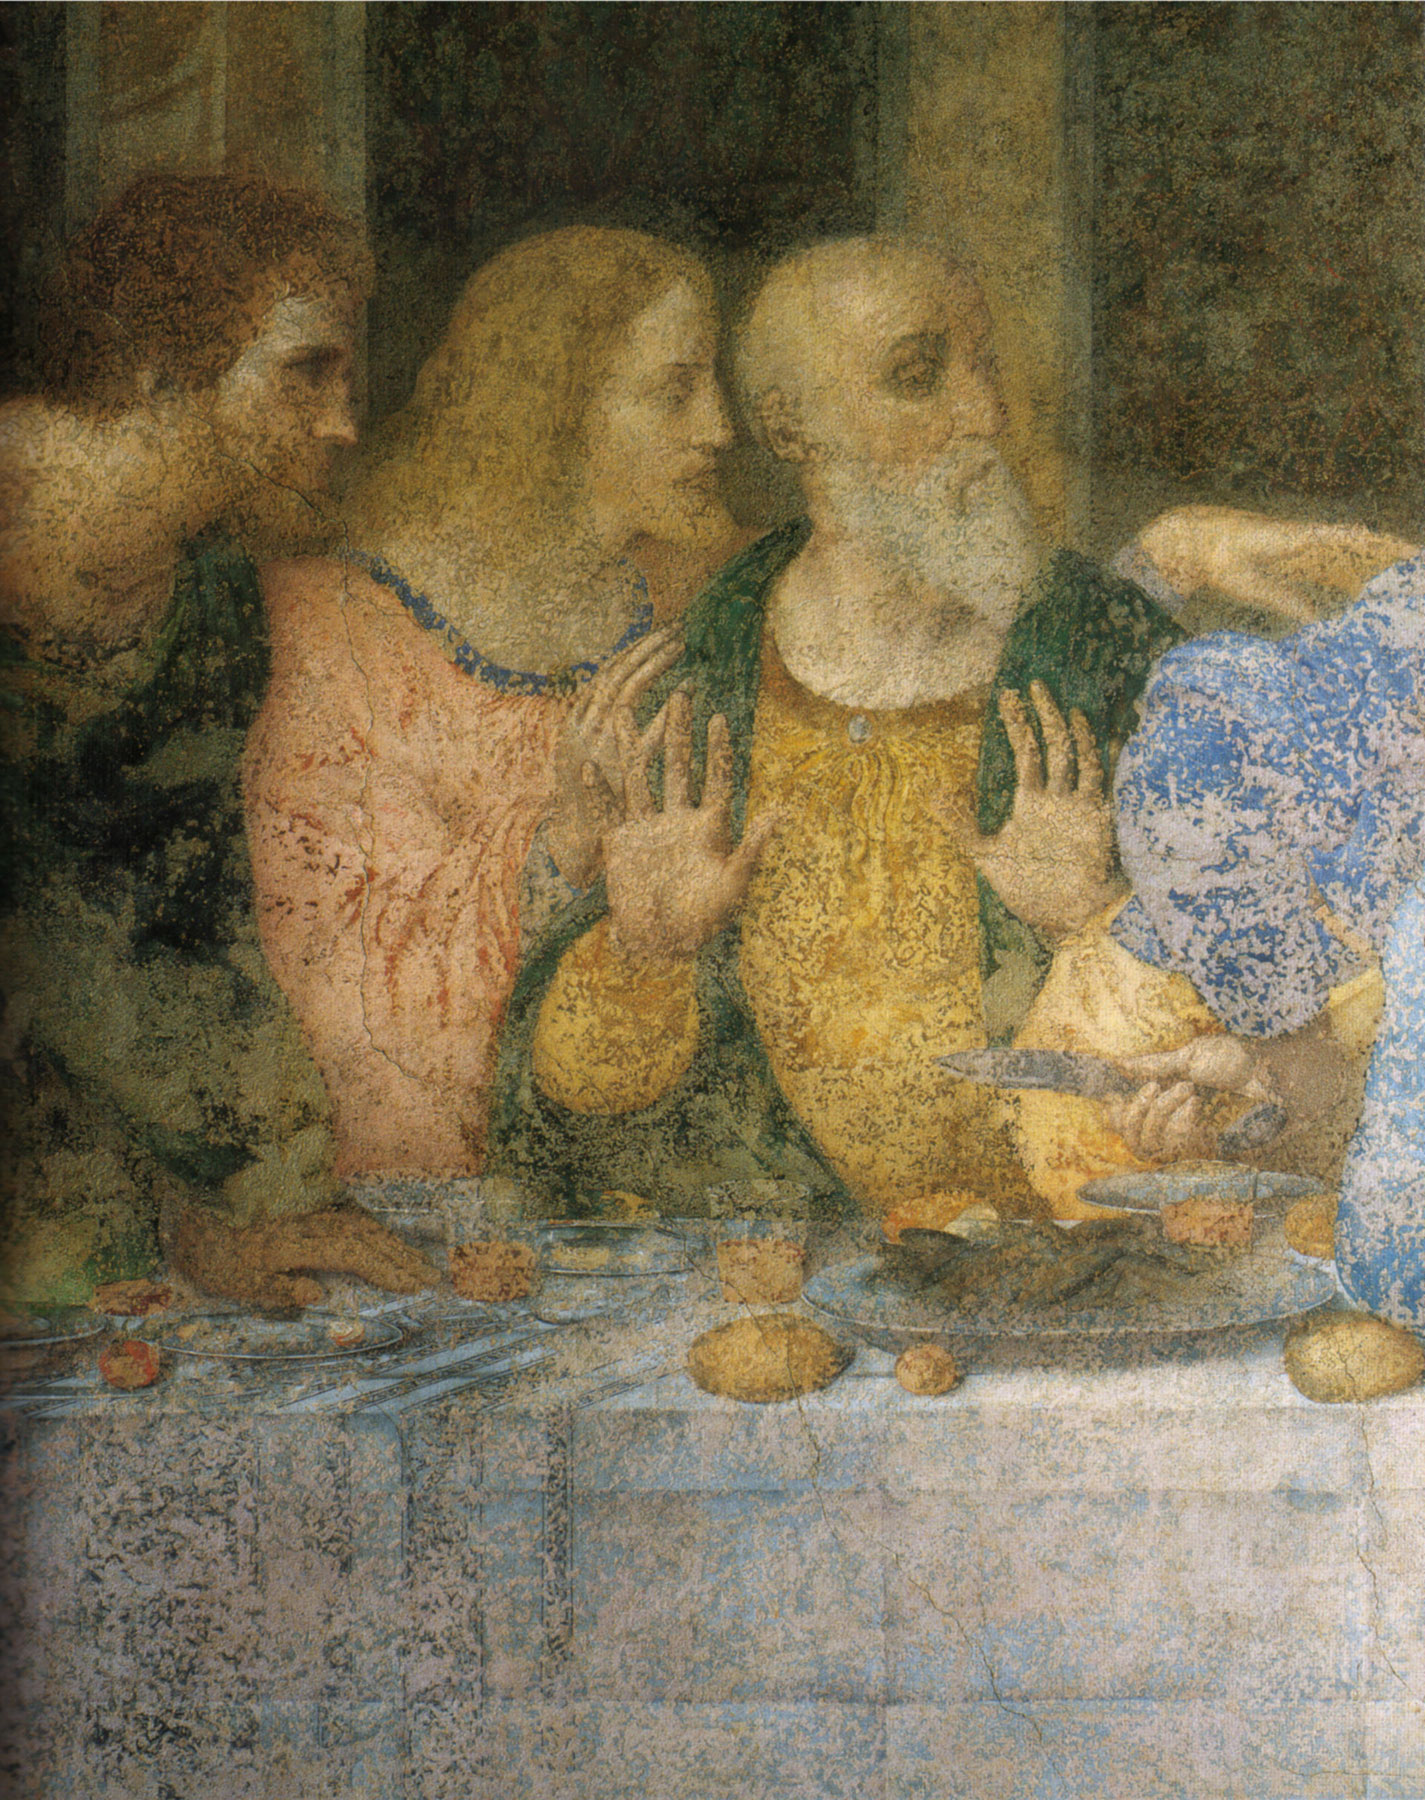 Leonardo. Il Cenacolo. Gli Apostoli Bartolomeo, Giacomo di Alfeo, e Andrea. Volti e mani parlano, rivelando l'inquietudine dei cuori e delle menti.
